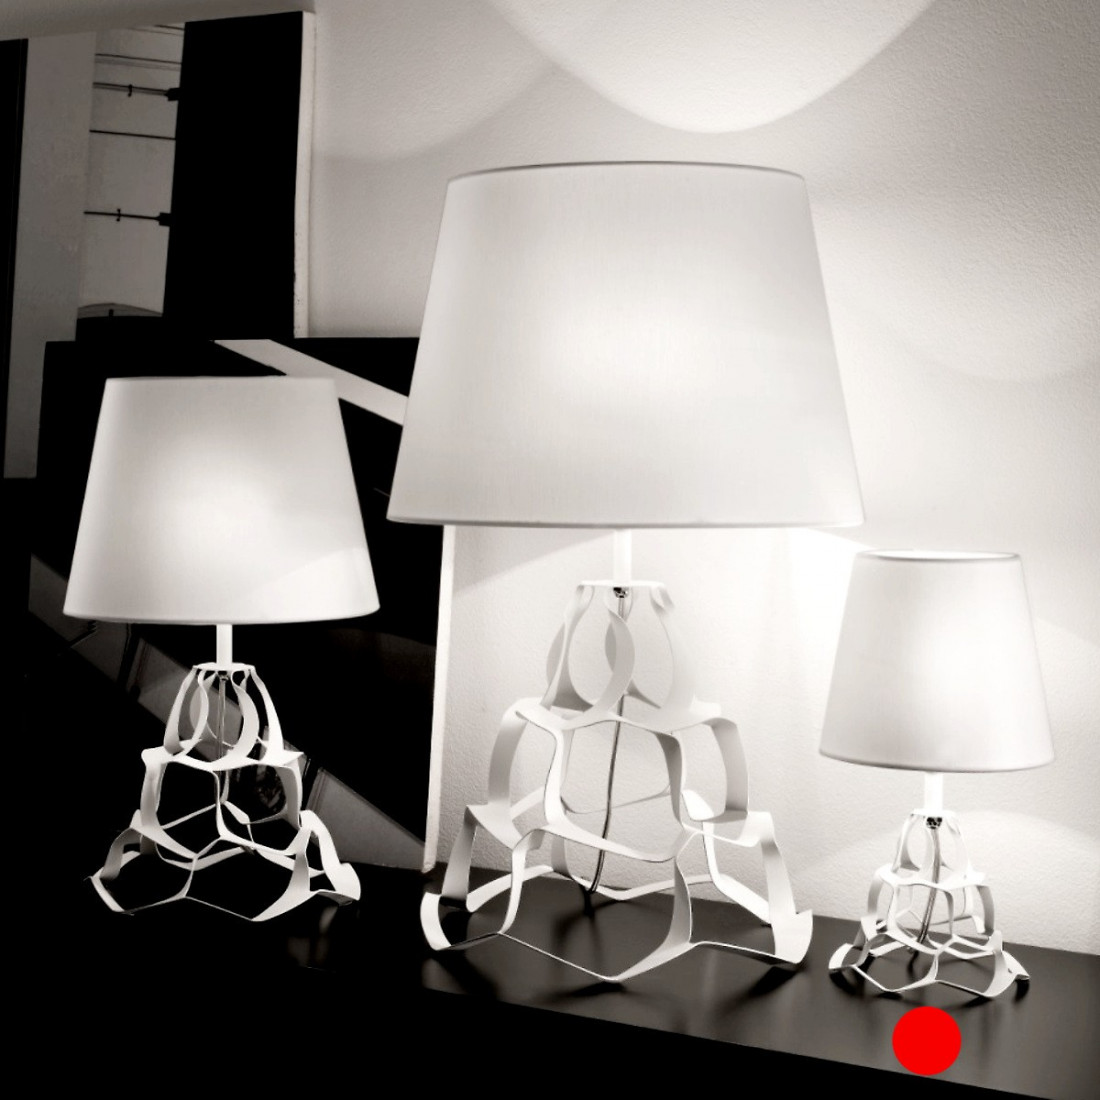 Ab-jour SN-ANAIS 1045 H30 E14 LED métal blanc bronze abat-jour lampe lampe table de chevet table intérieur moderne